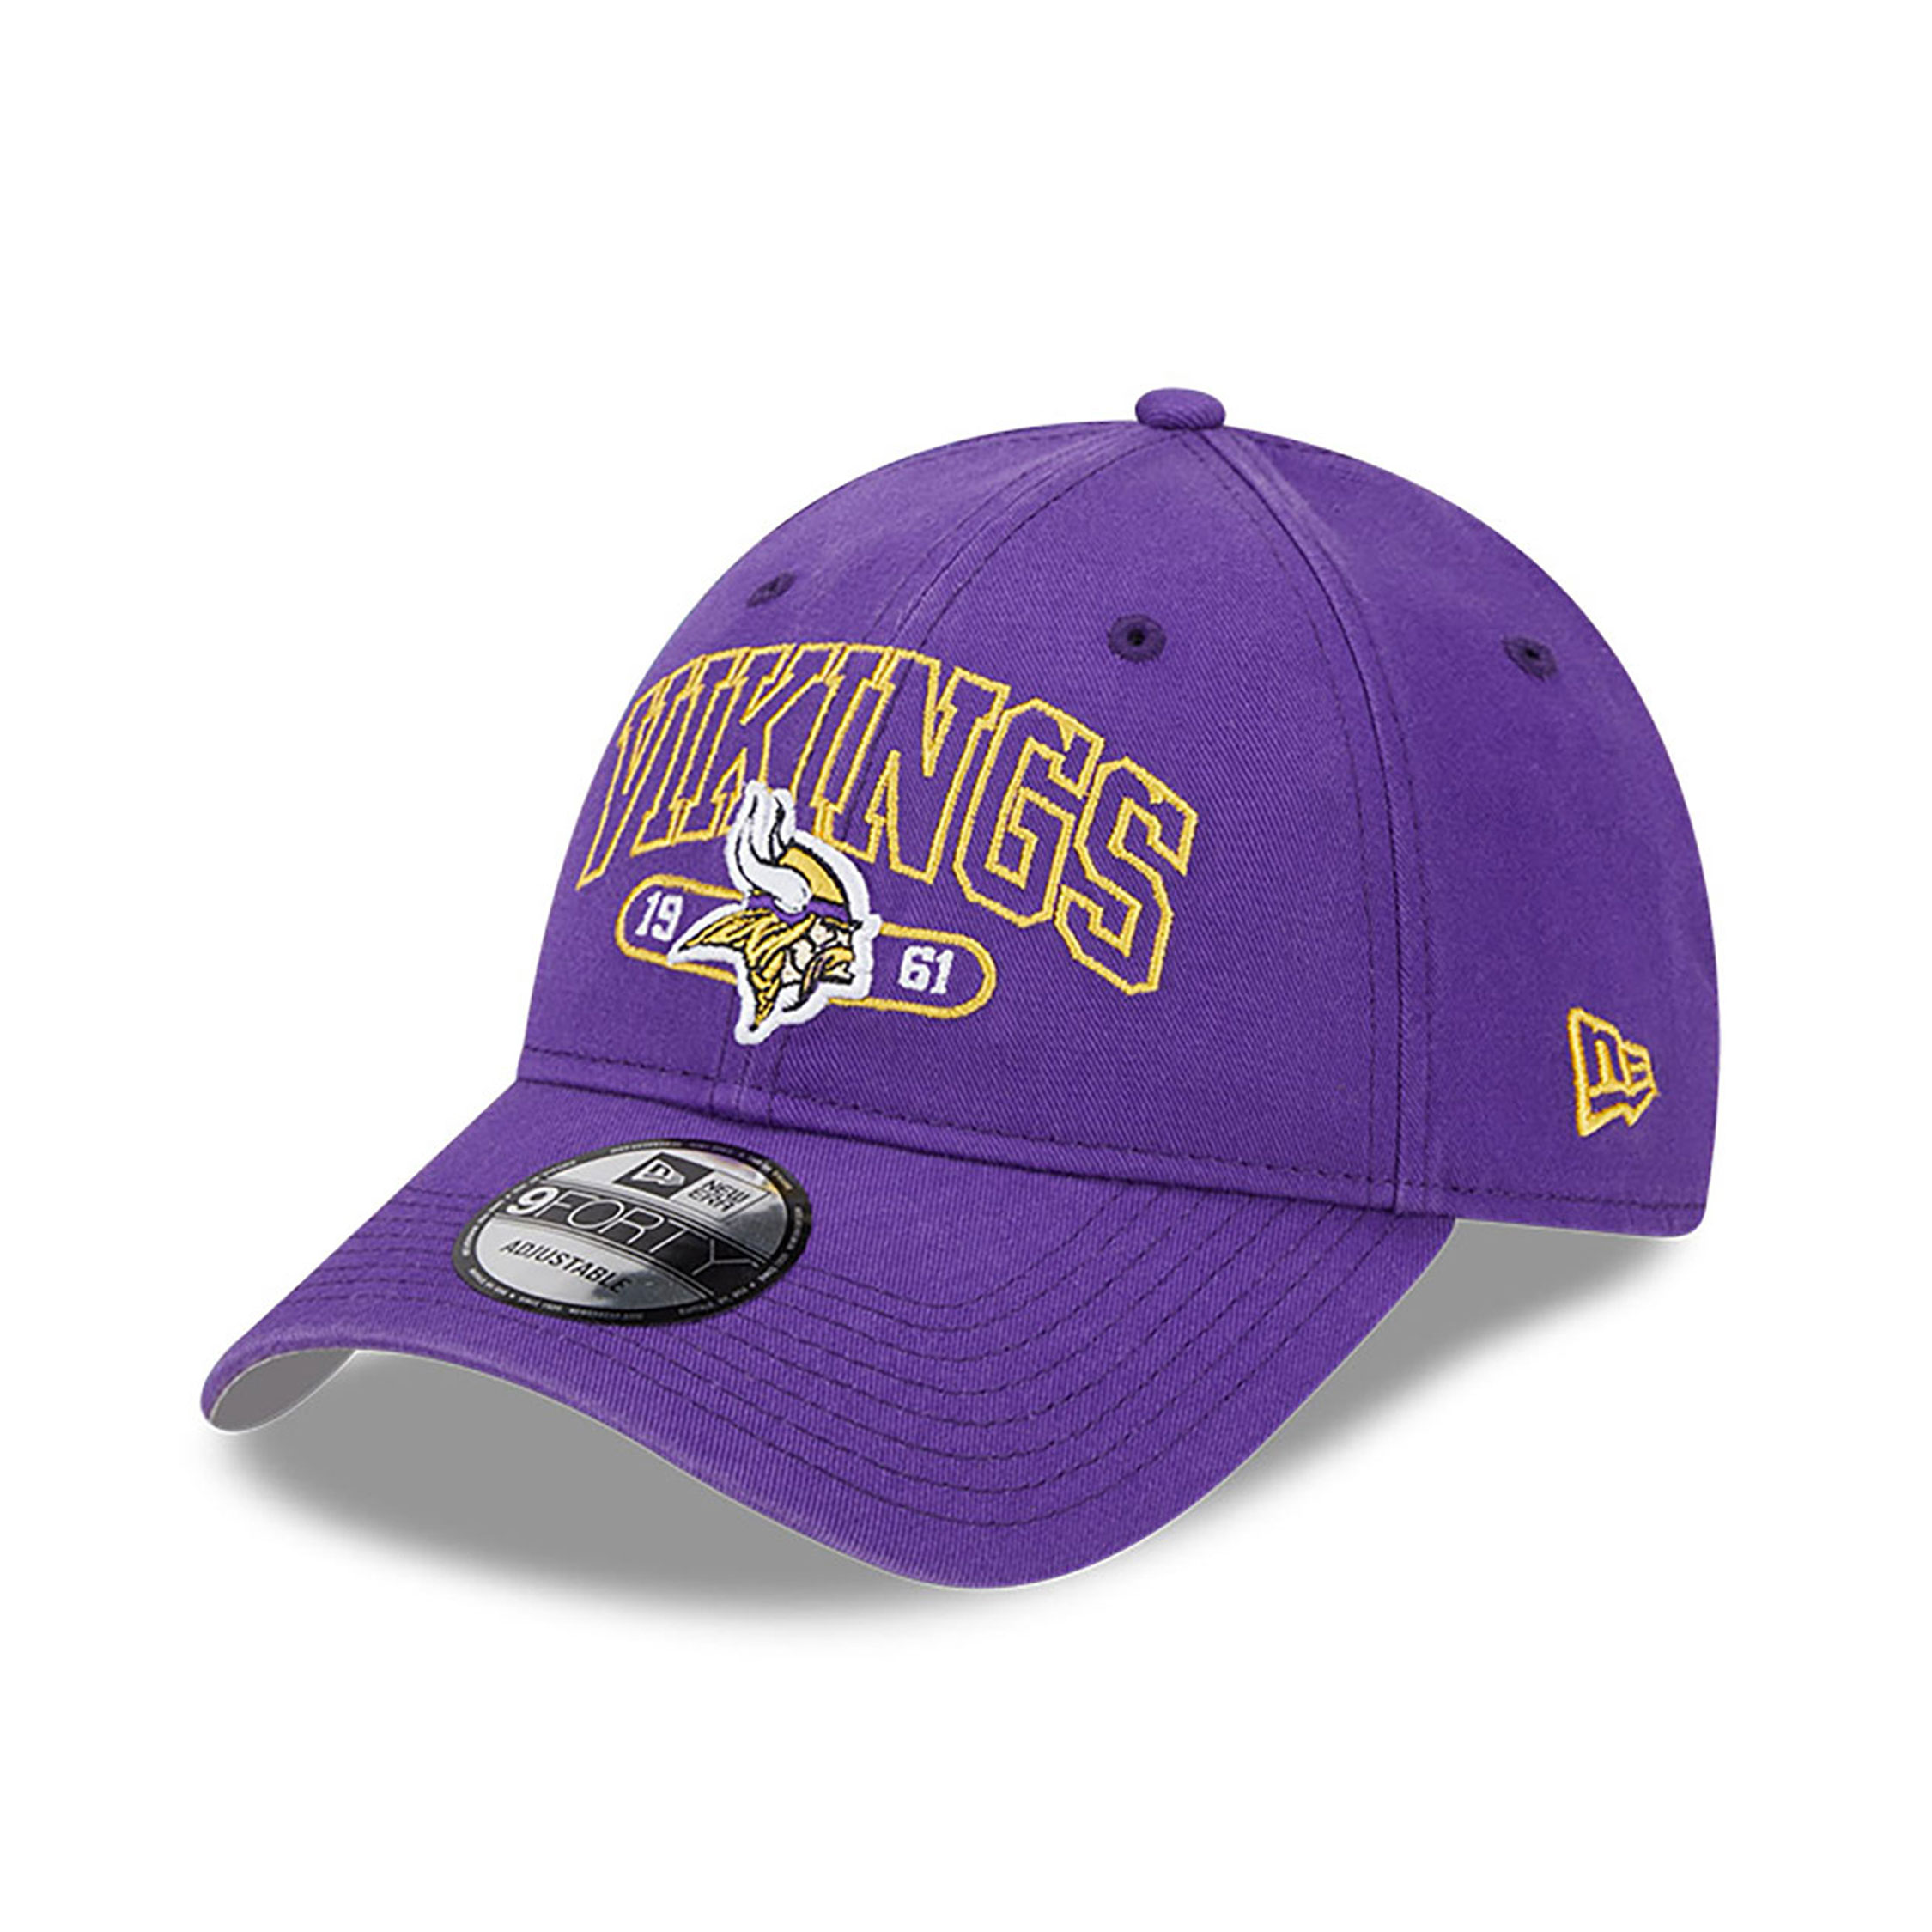 Minnesota Vikings adjustable cap